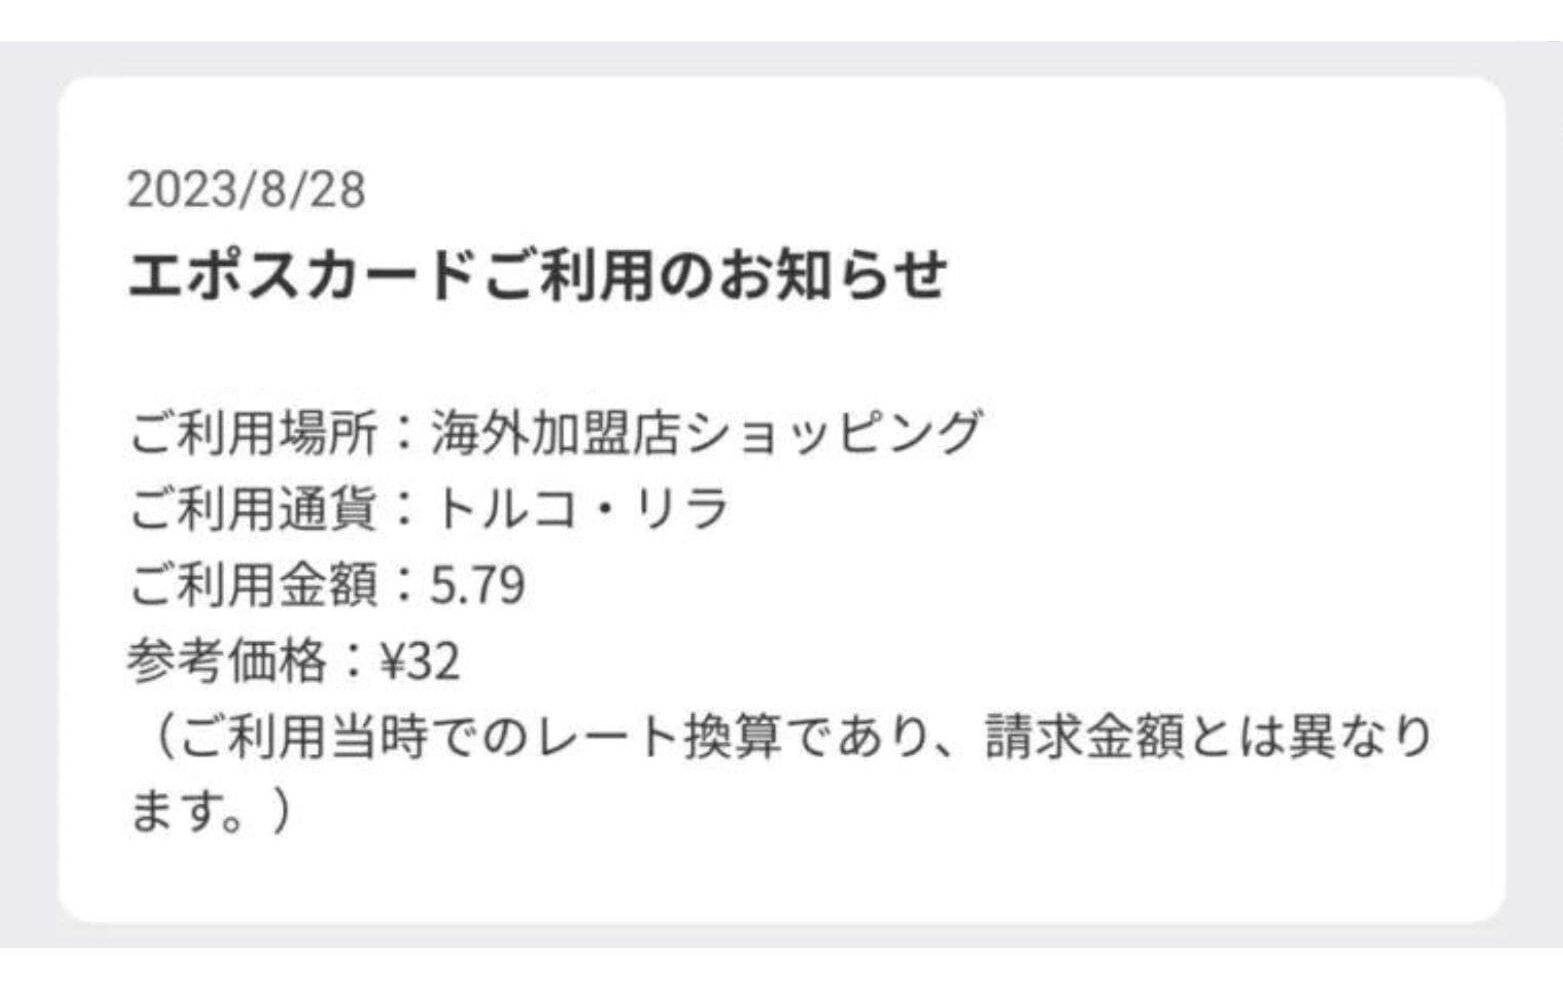 【Google One】日本円でわずか32円